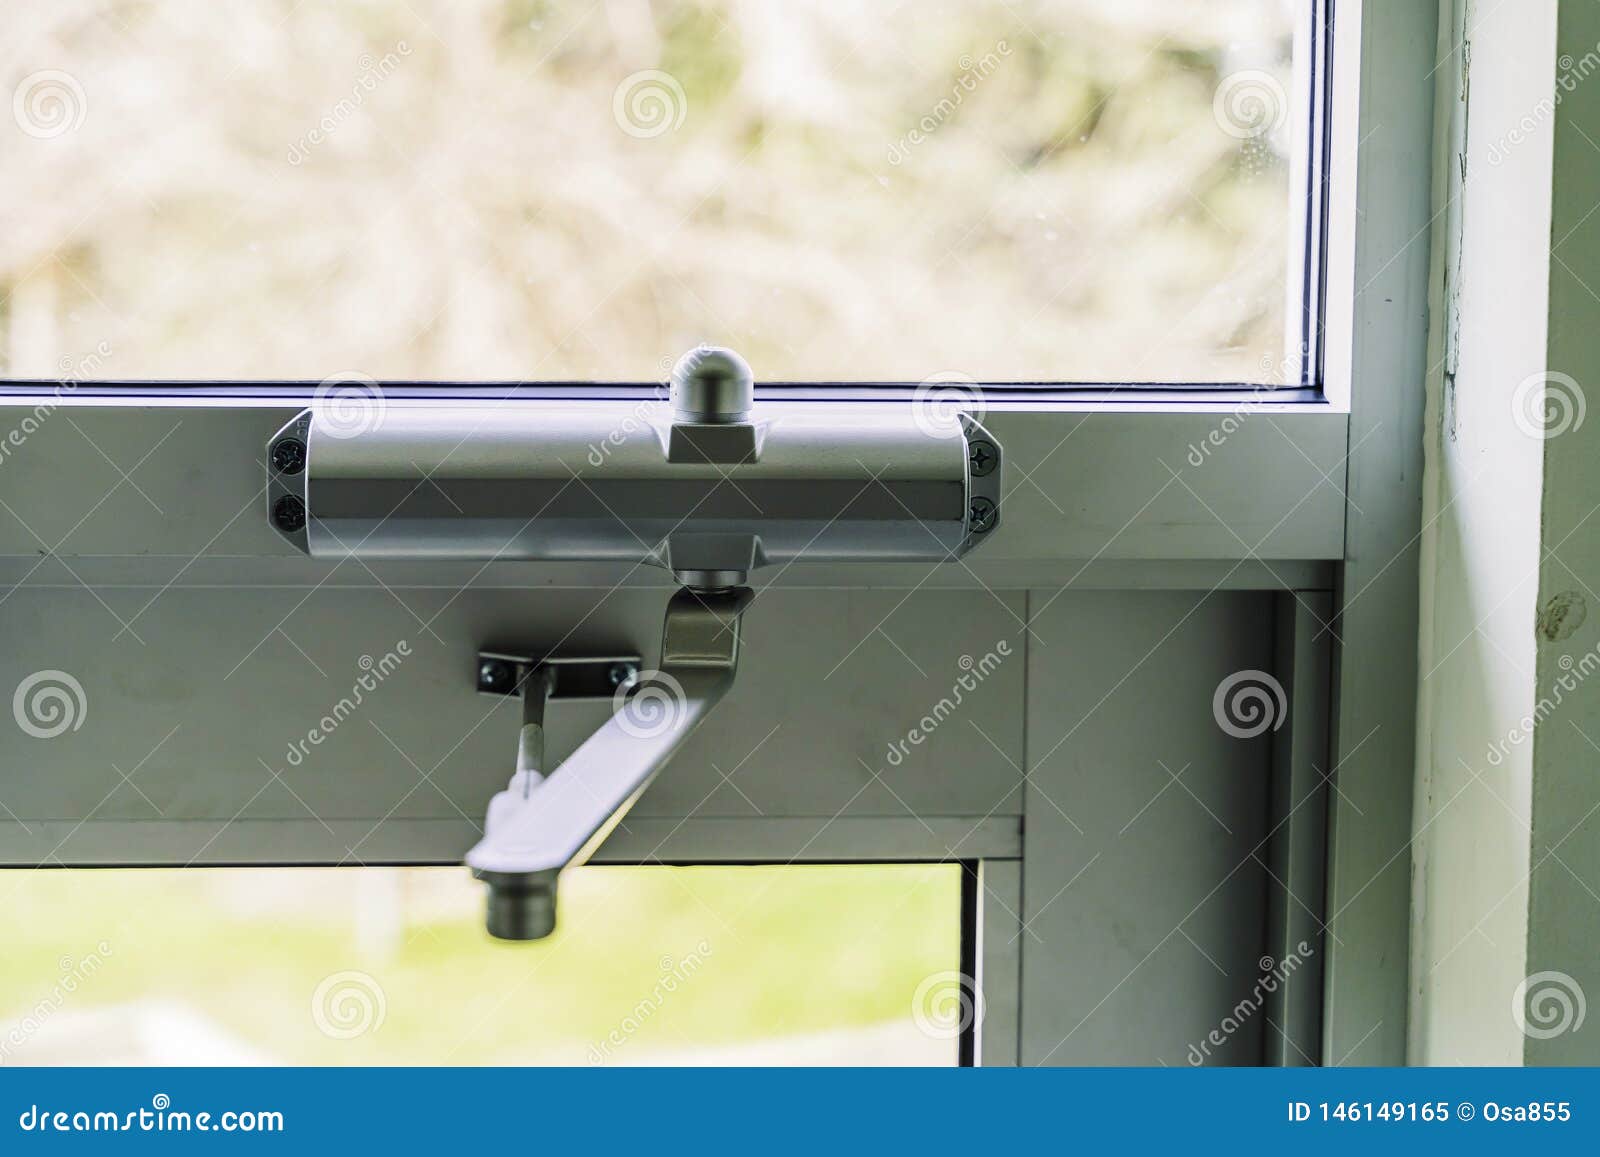 door closer on glass door on building entrace